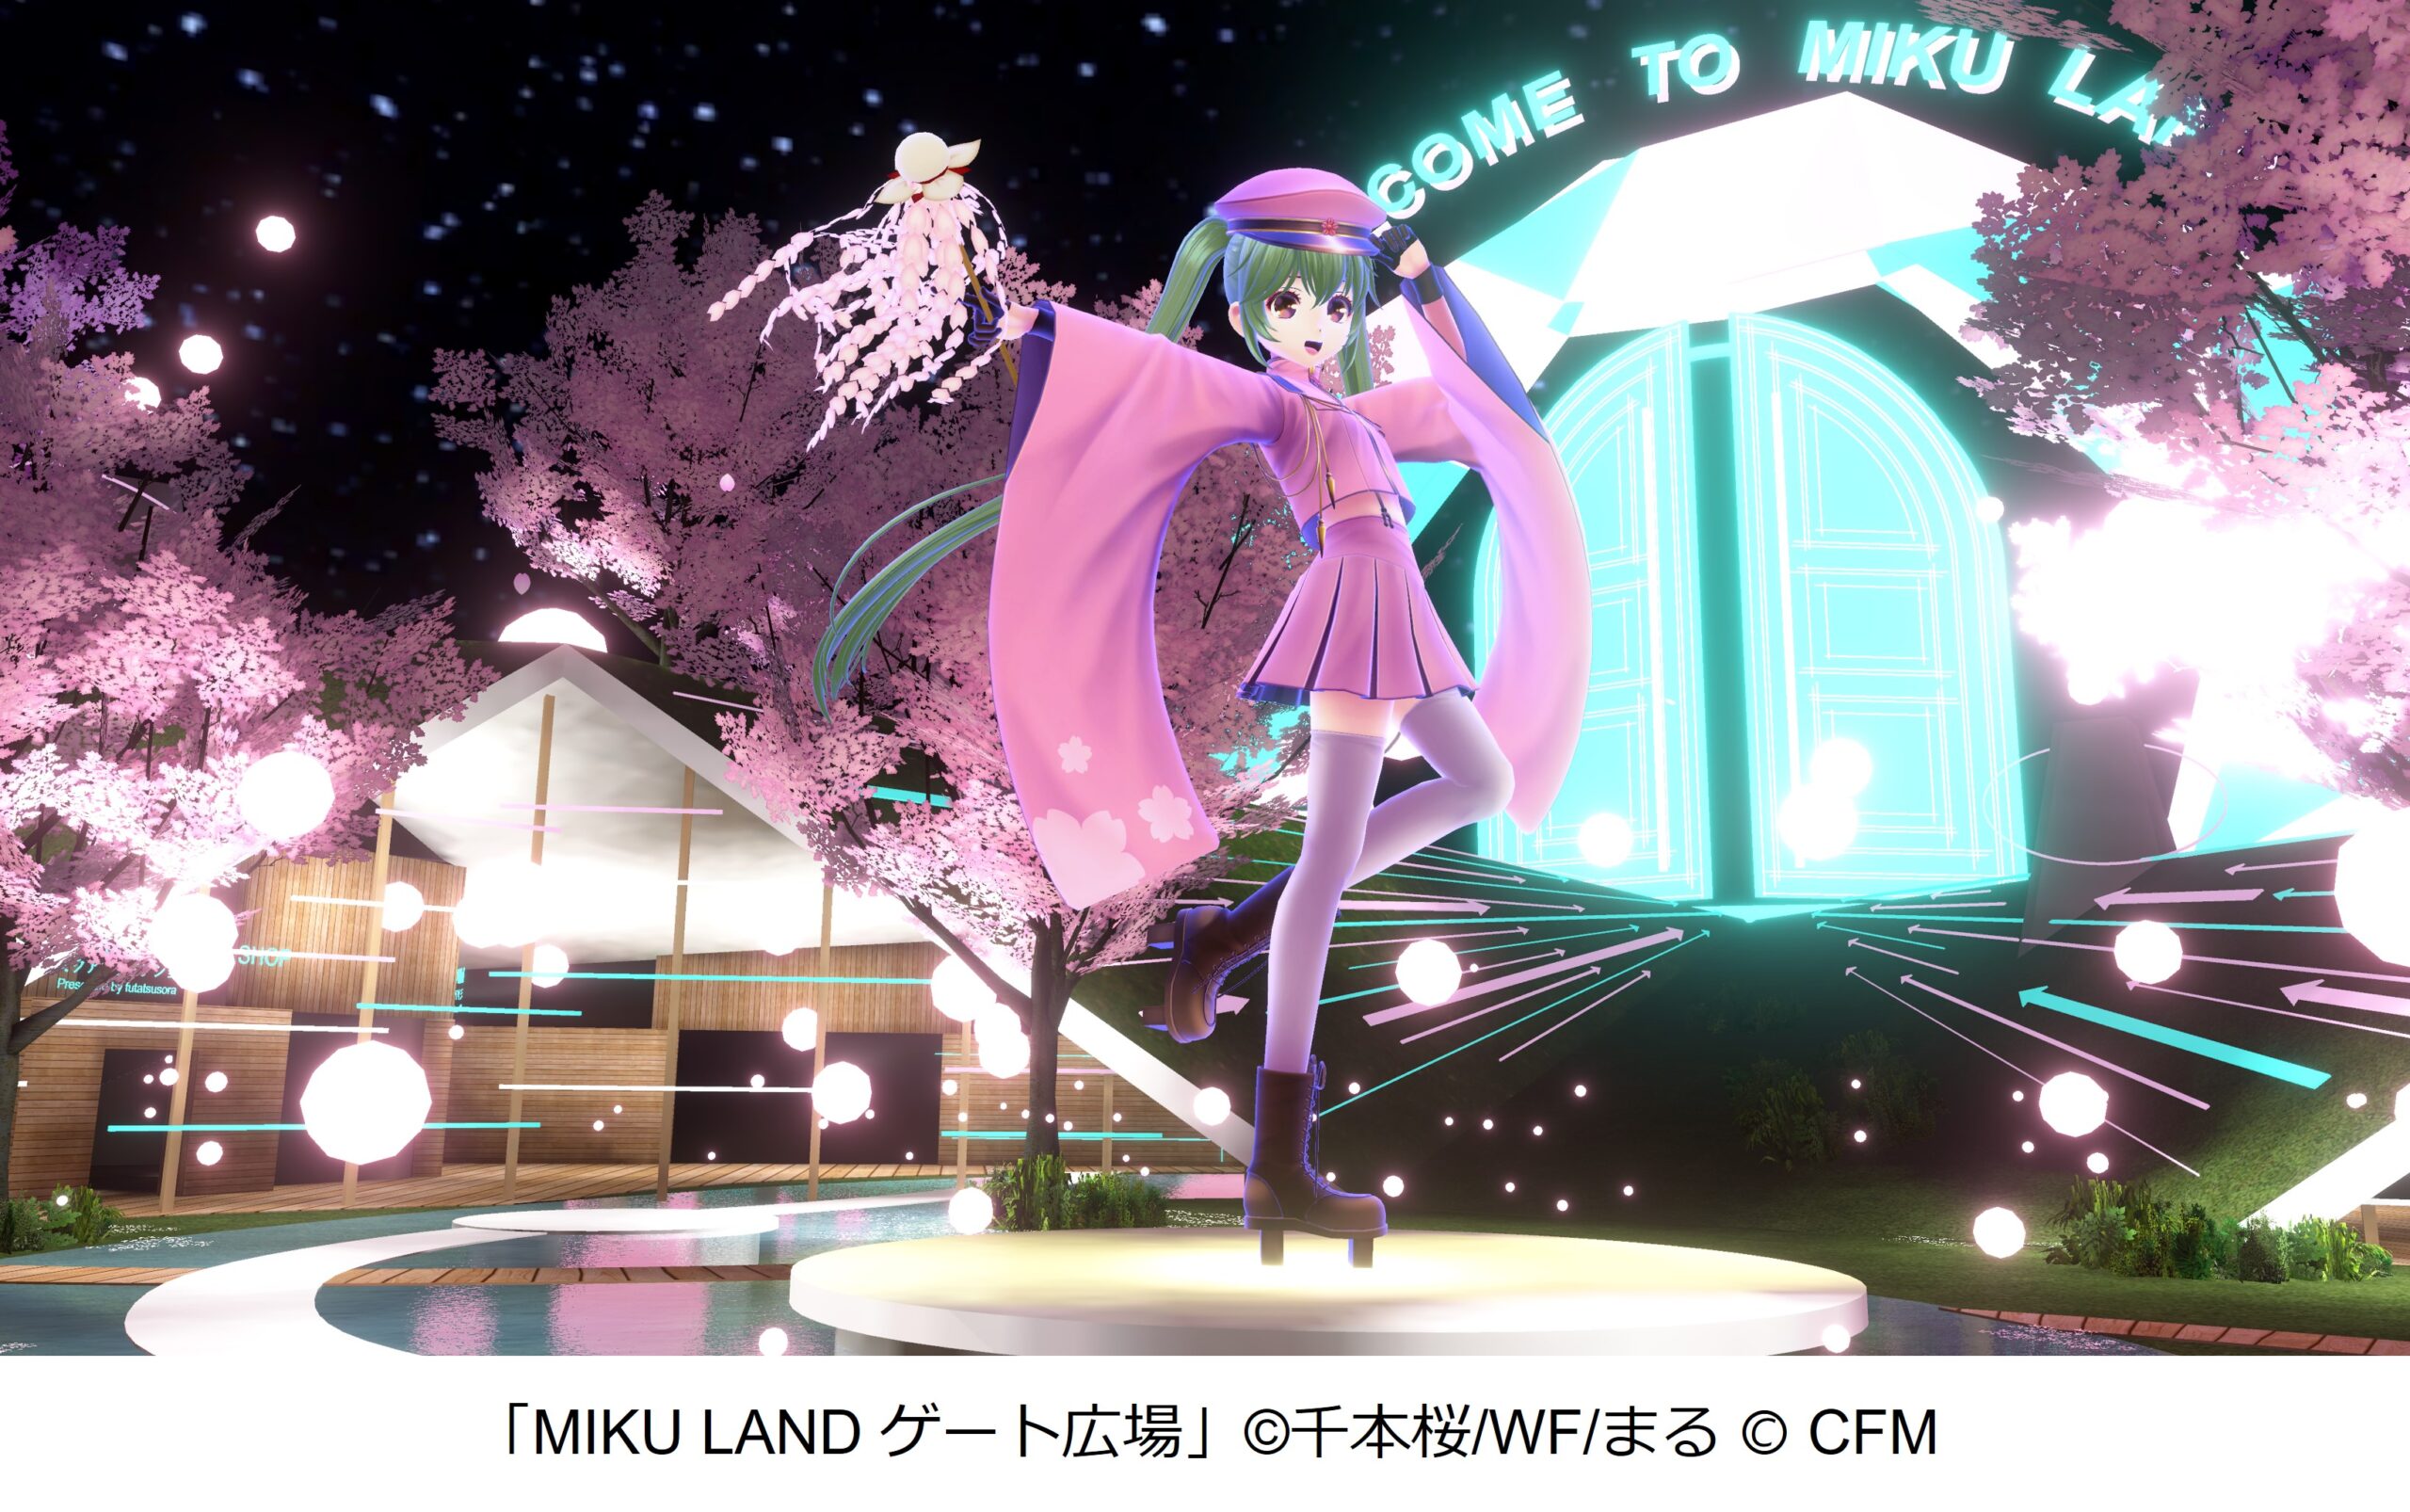 千本桜のメタバースで初音ミクとお花見『MIKU LAND 2022 YOSAKURA 